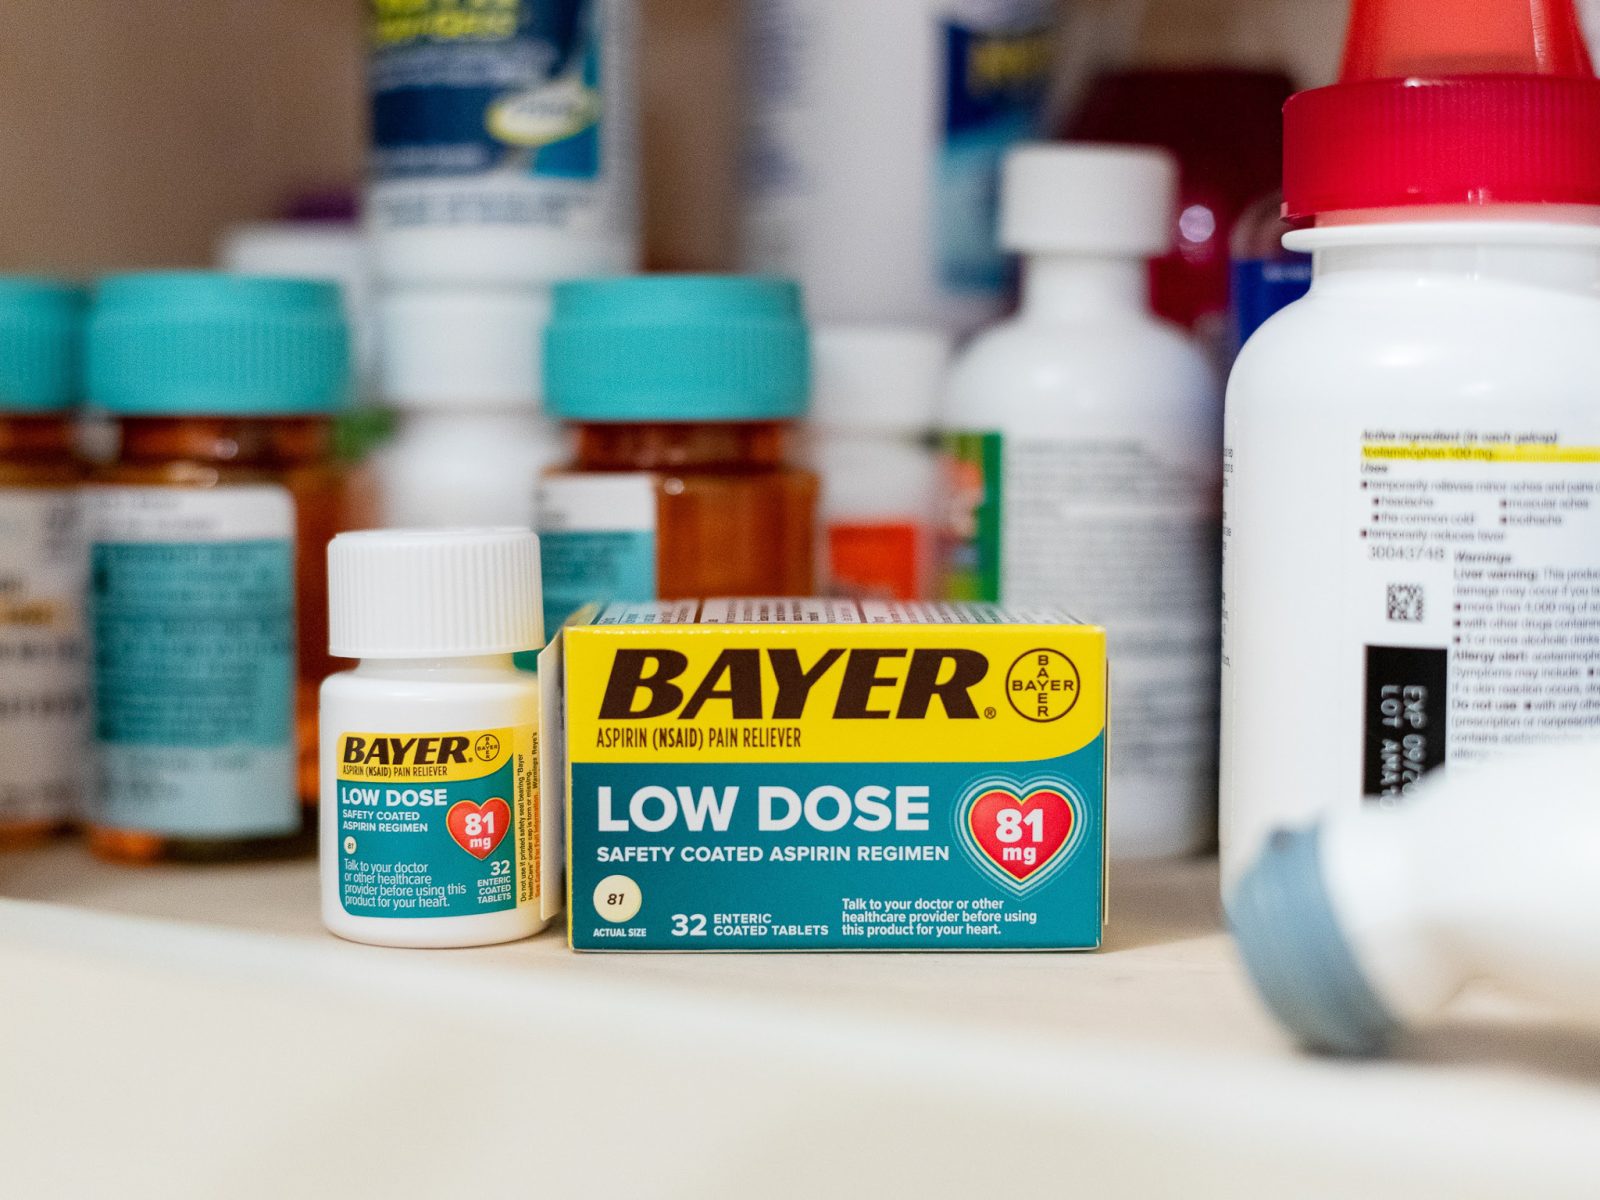 Bayer Aspirin As Low As $1.79 At Kroger